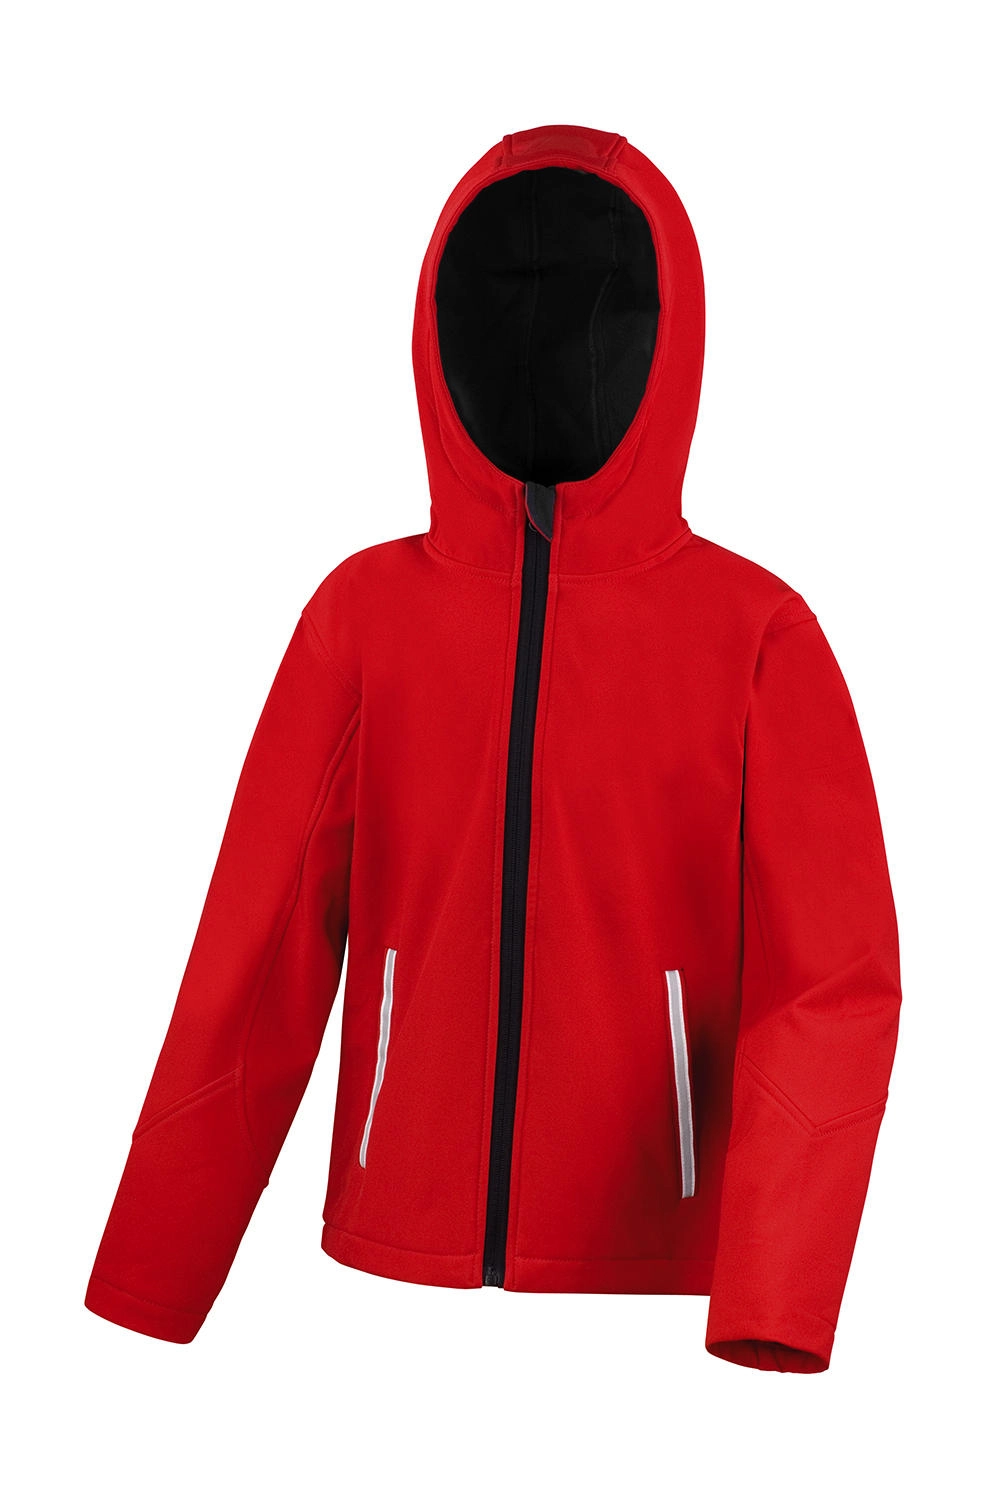 Kids TX Performance Hooded Softshell Jacket zum Besticken und Bedrucken in der Farbe Red/Black mit Ihren Logo, Schriftzug oder Motiv.